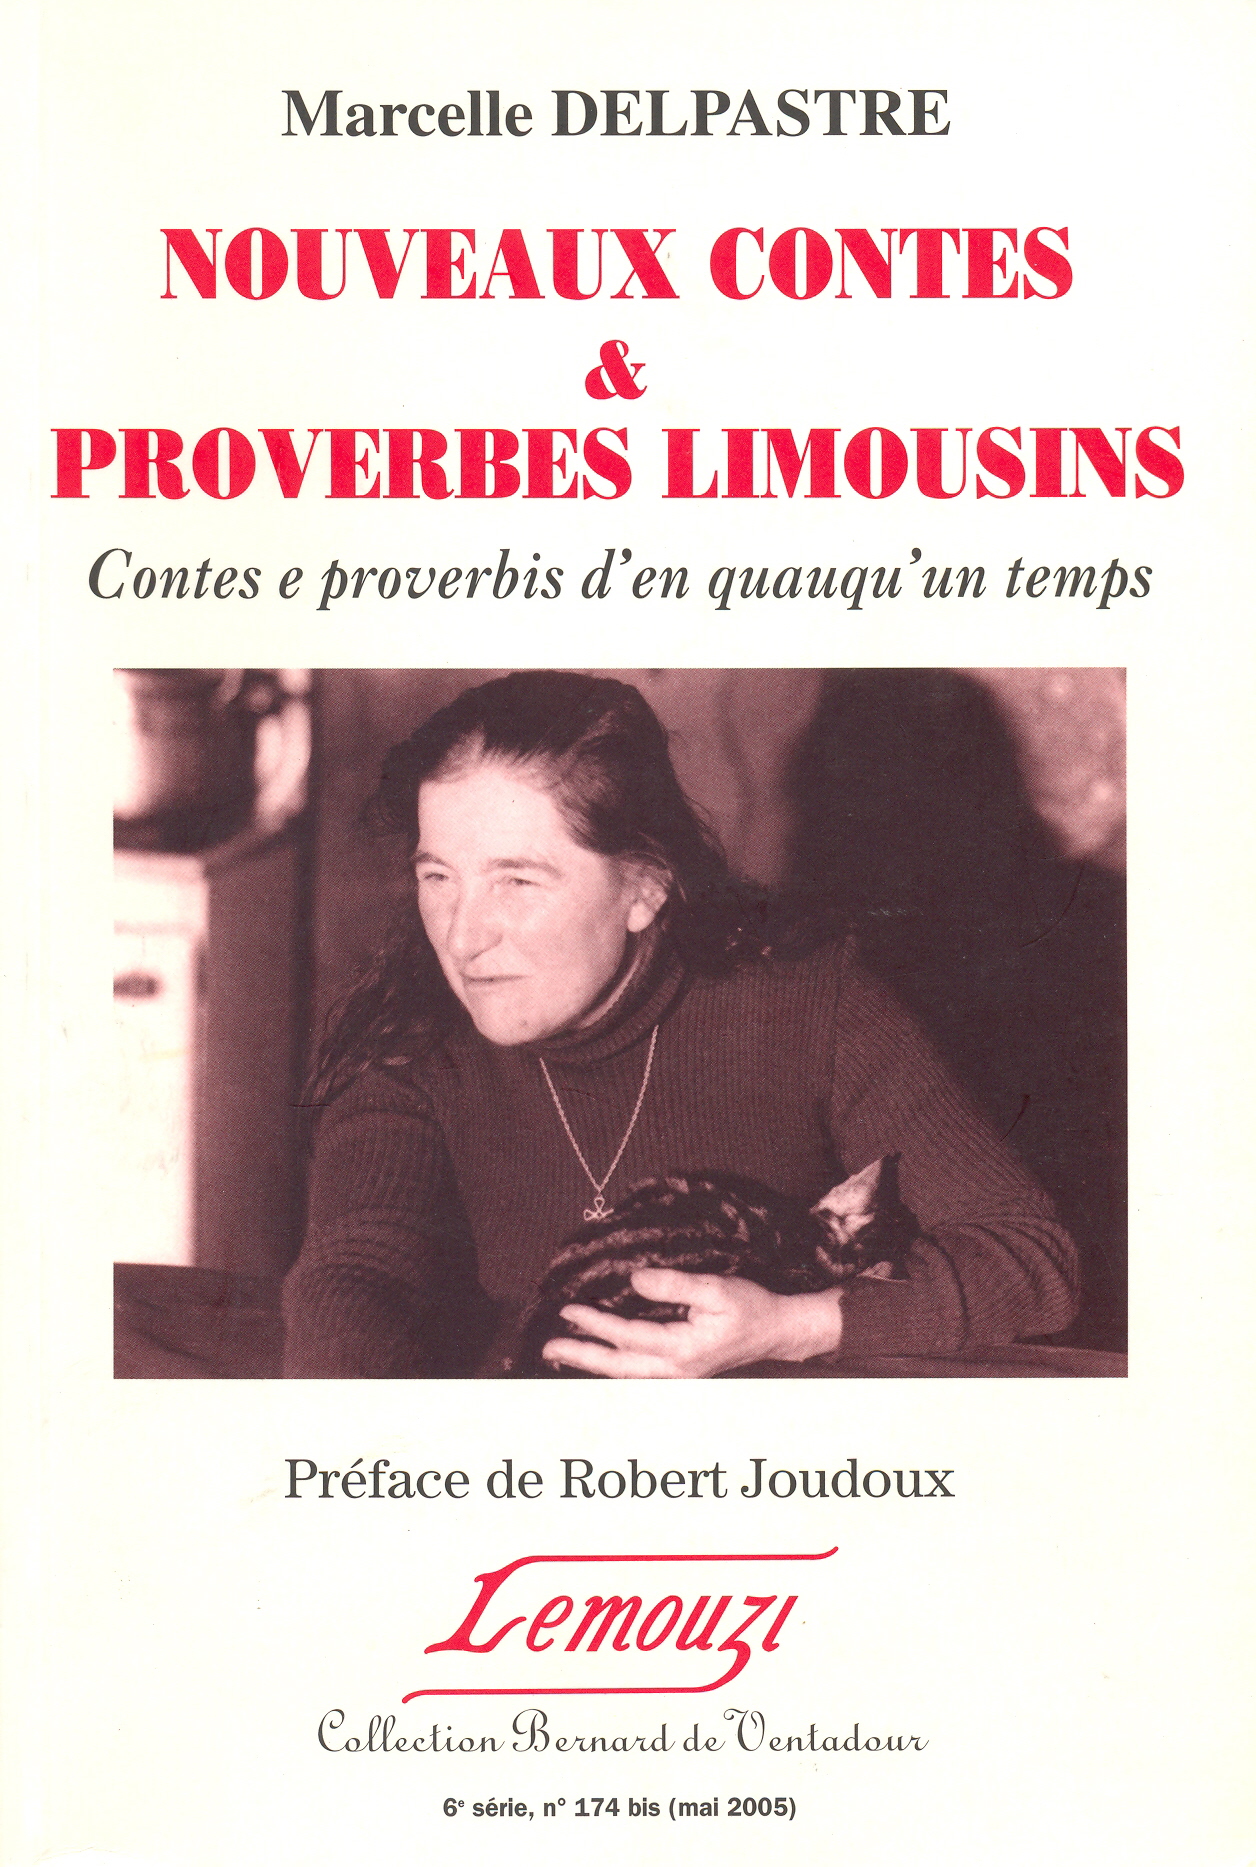 Couverture de Nouveaux contes & proverbes limousins / Lemouzi N° 174 bis (D)